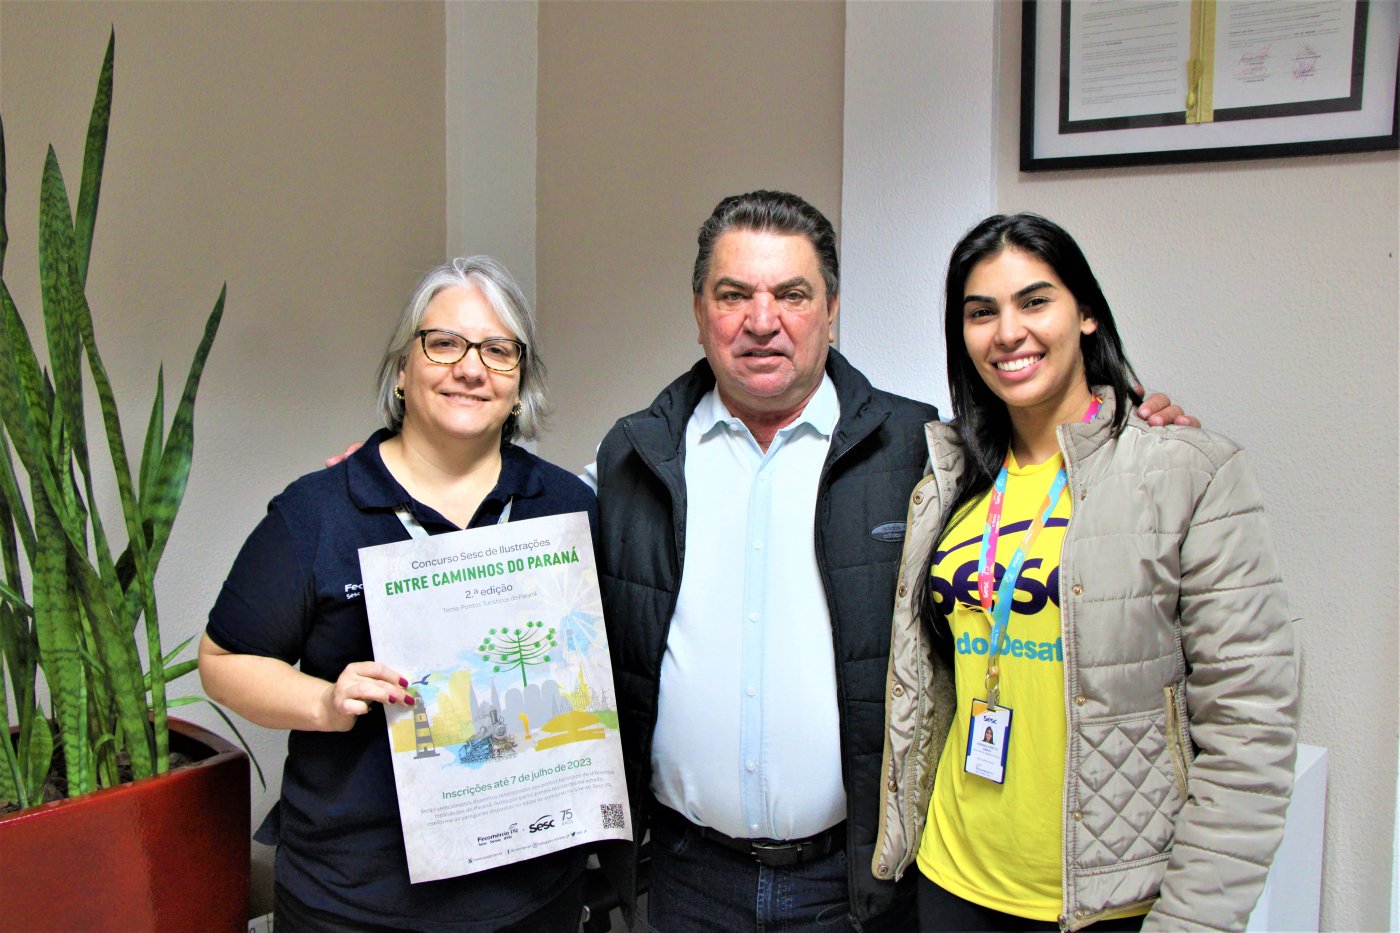 Arapongas adere ao Concurso “Entre Caminhos do Paraná” promovido